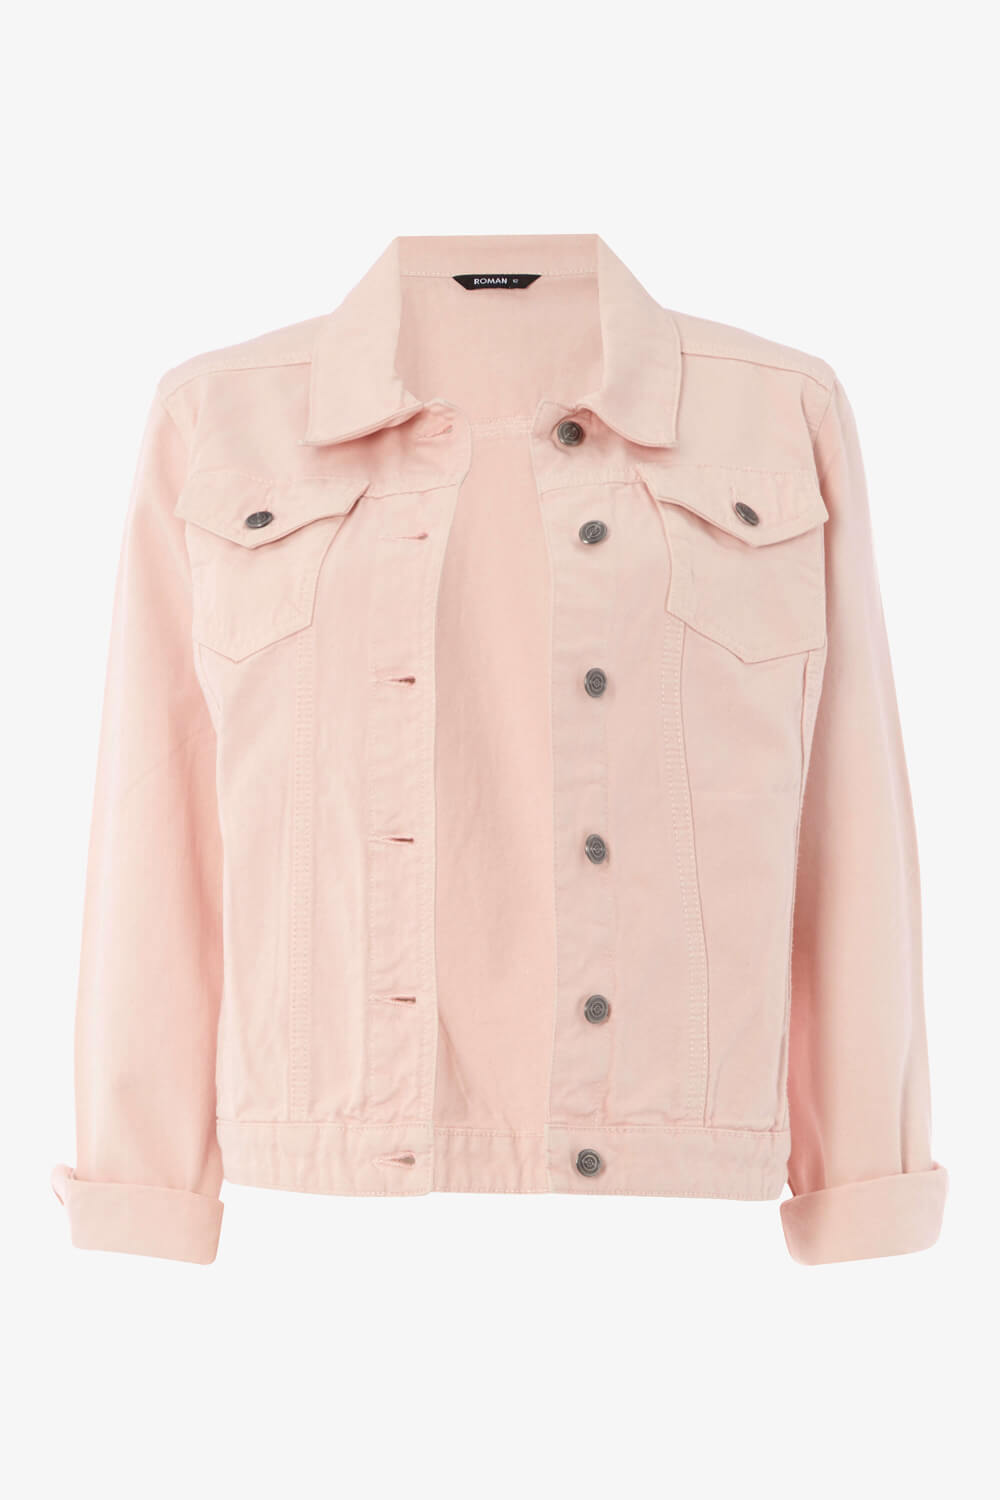 Light Pink Denim Jacket, Image 5 of 5